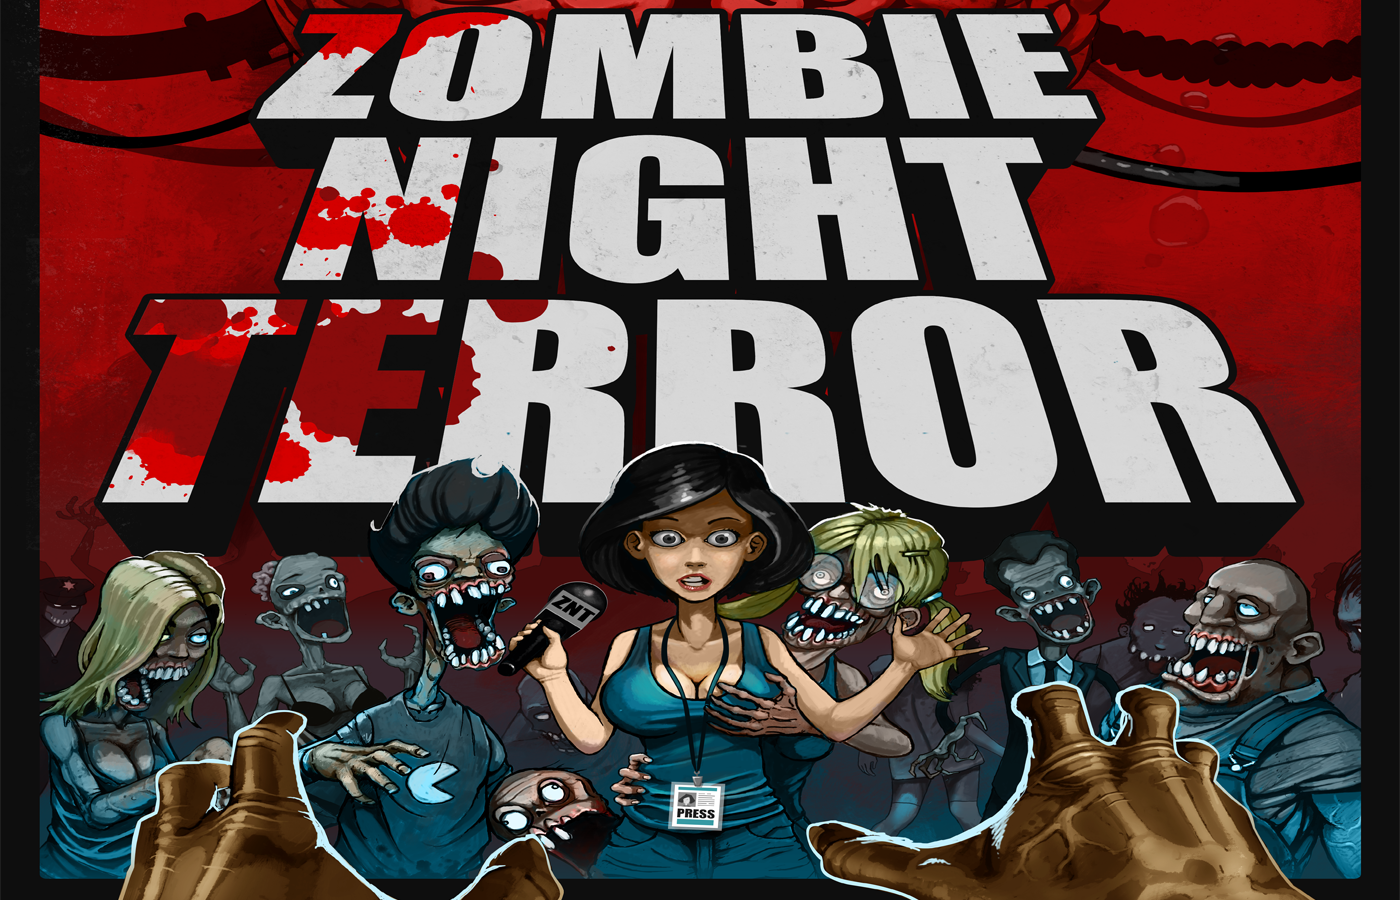 download night zombie terror